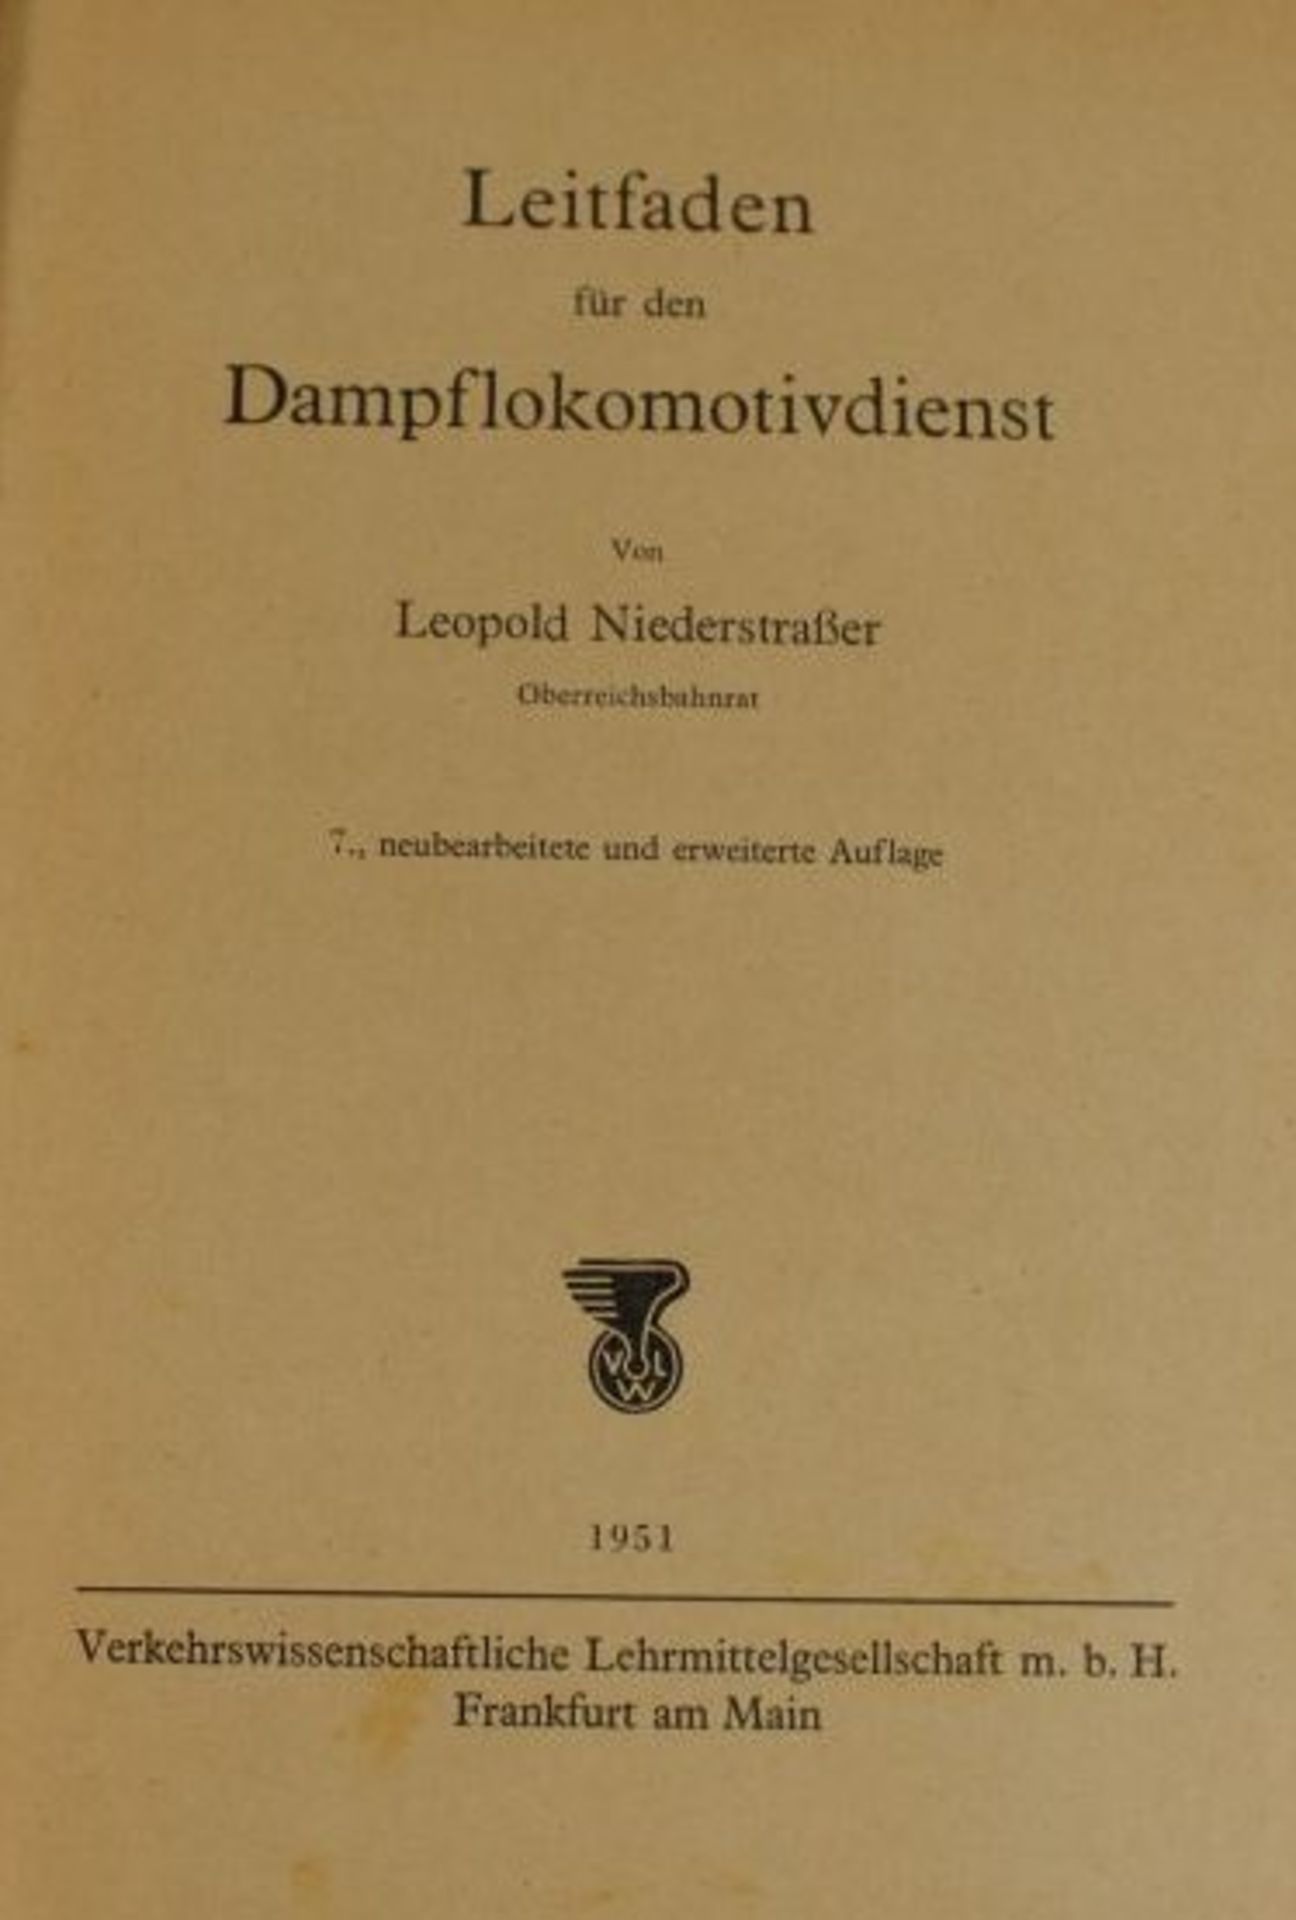 Leitfaden für den Dampfloomotivdienst, Leopold Niederstrasser, 1951, Alters-u. Gebrauchsspuren. - Bild 2 aus 2